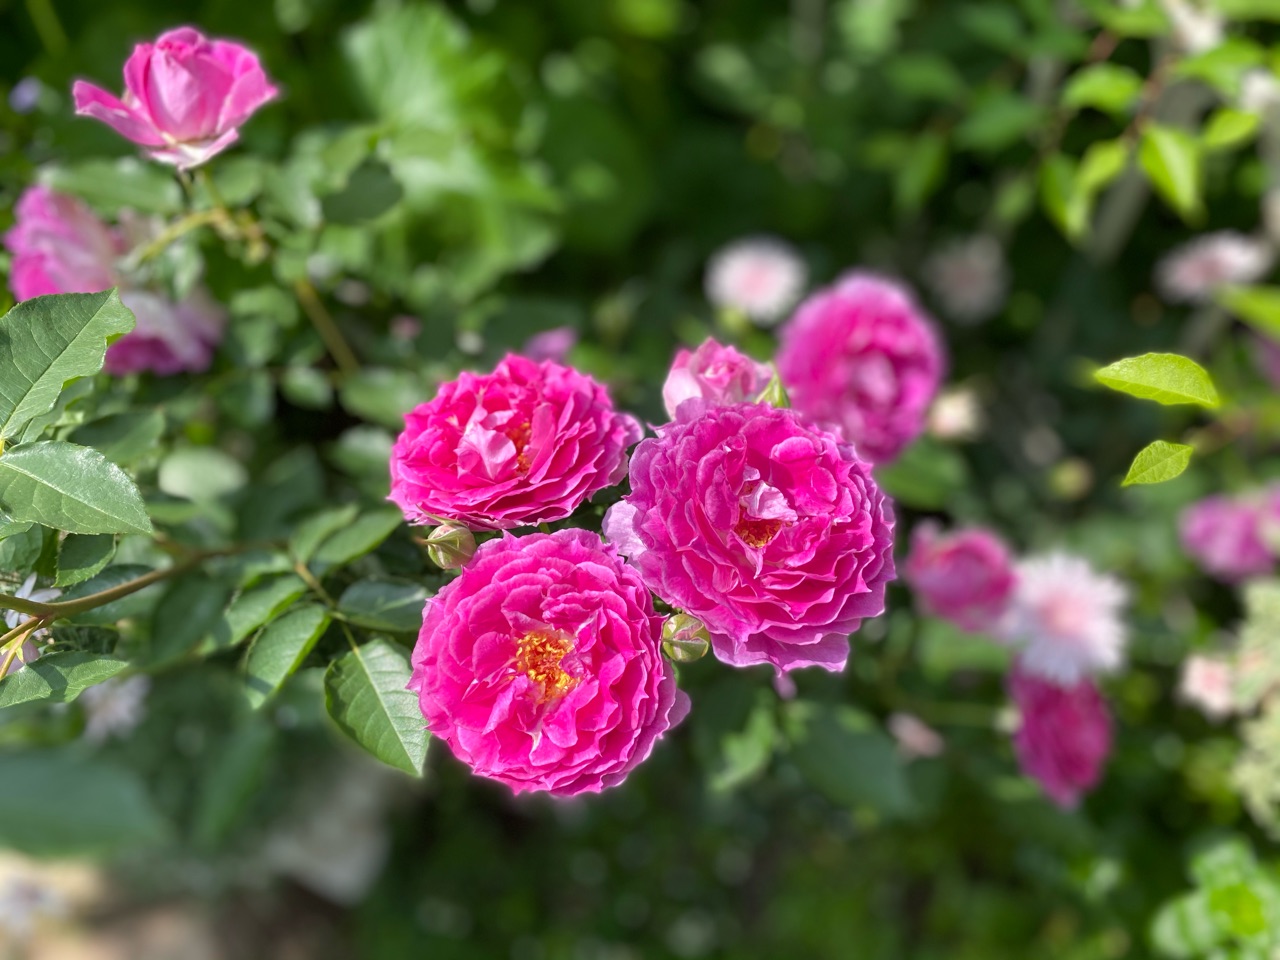 小さな庭のバラと草花 シェエラザード のばらのガーデニングブログ Hana And Rose Garden Powered By ライブドアブログ